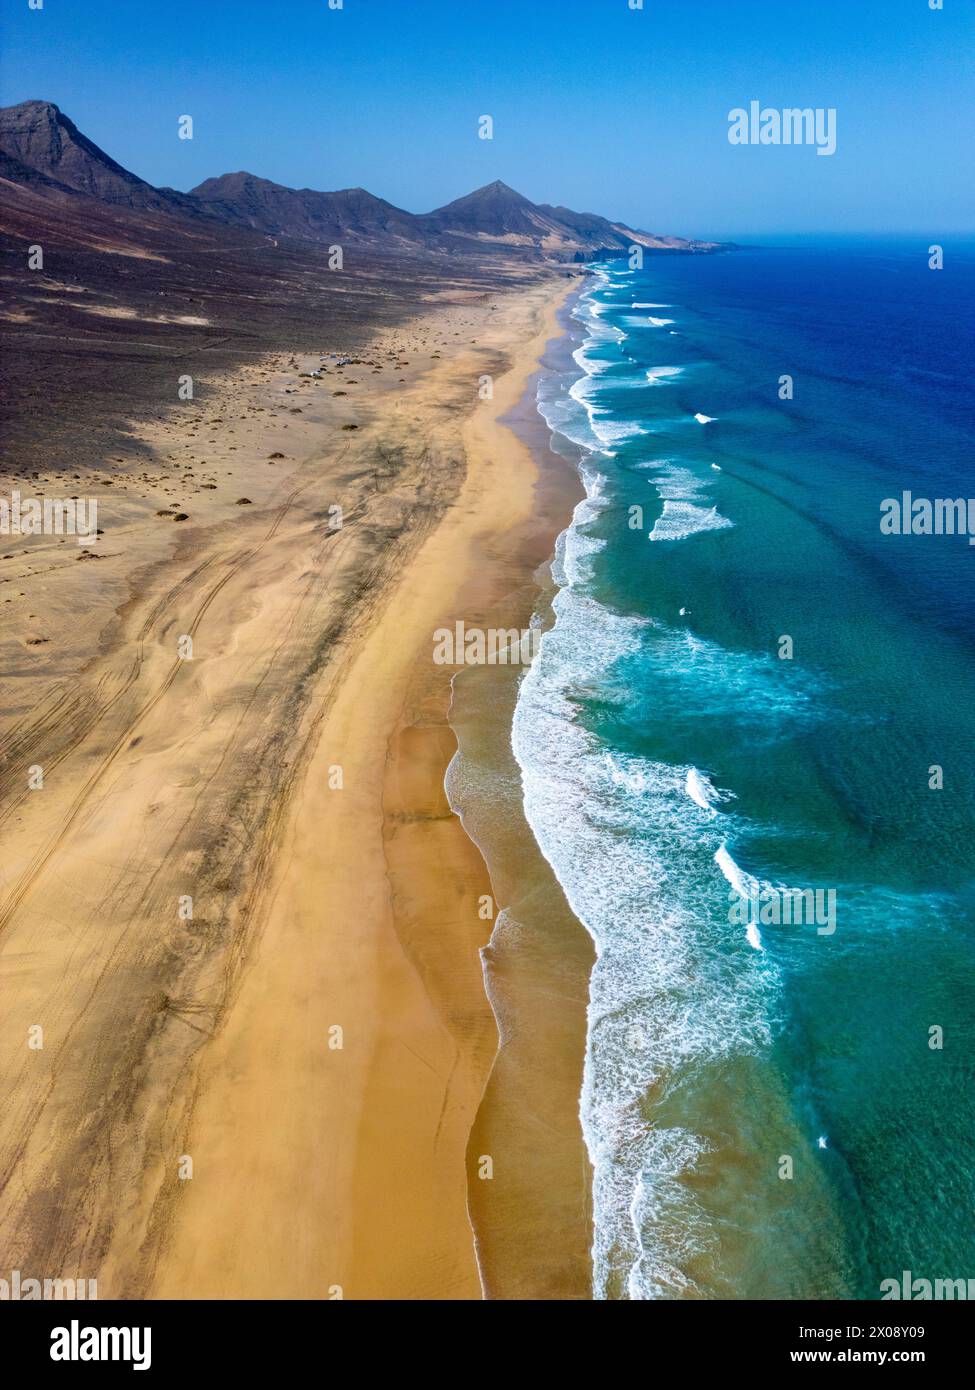 Scatto aereo mozzafiato che cattura la vasta distesa sabbiosa della spiaggia di Cofete con acque turchesi incontaminate lungo la costa frastagliata di Fuerteventura, showcasi Foto Stock